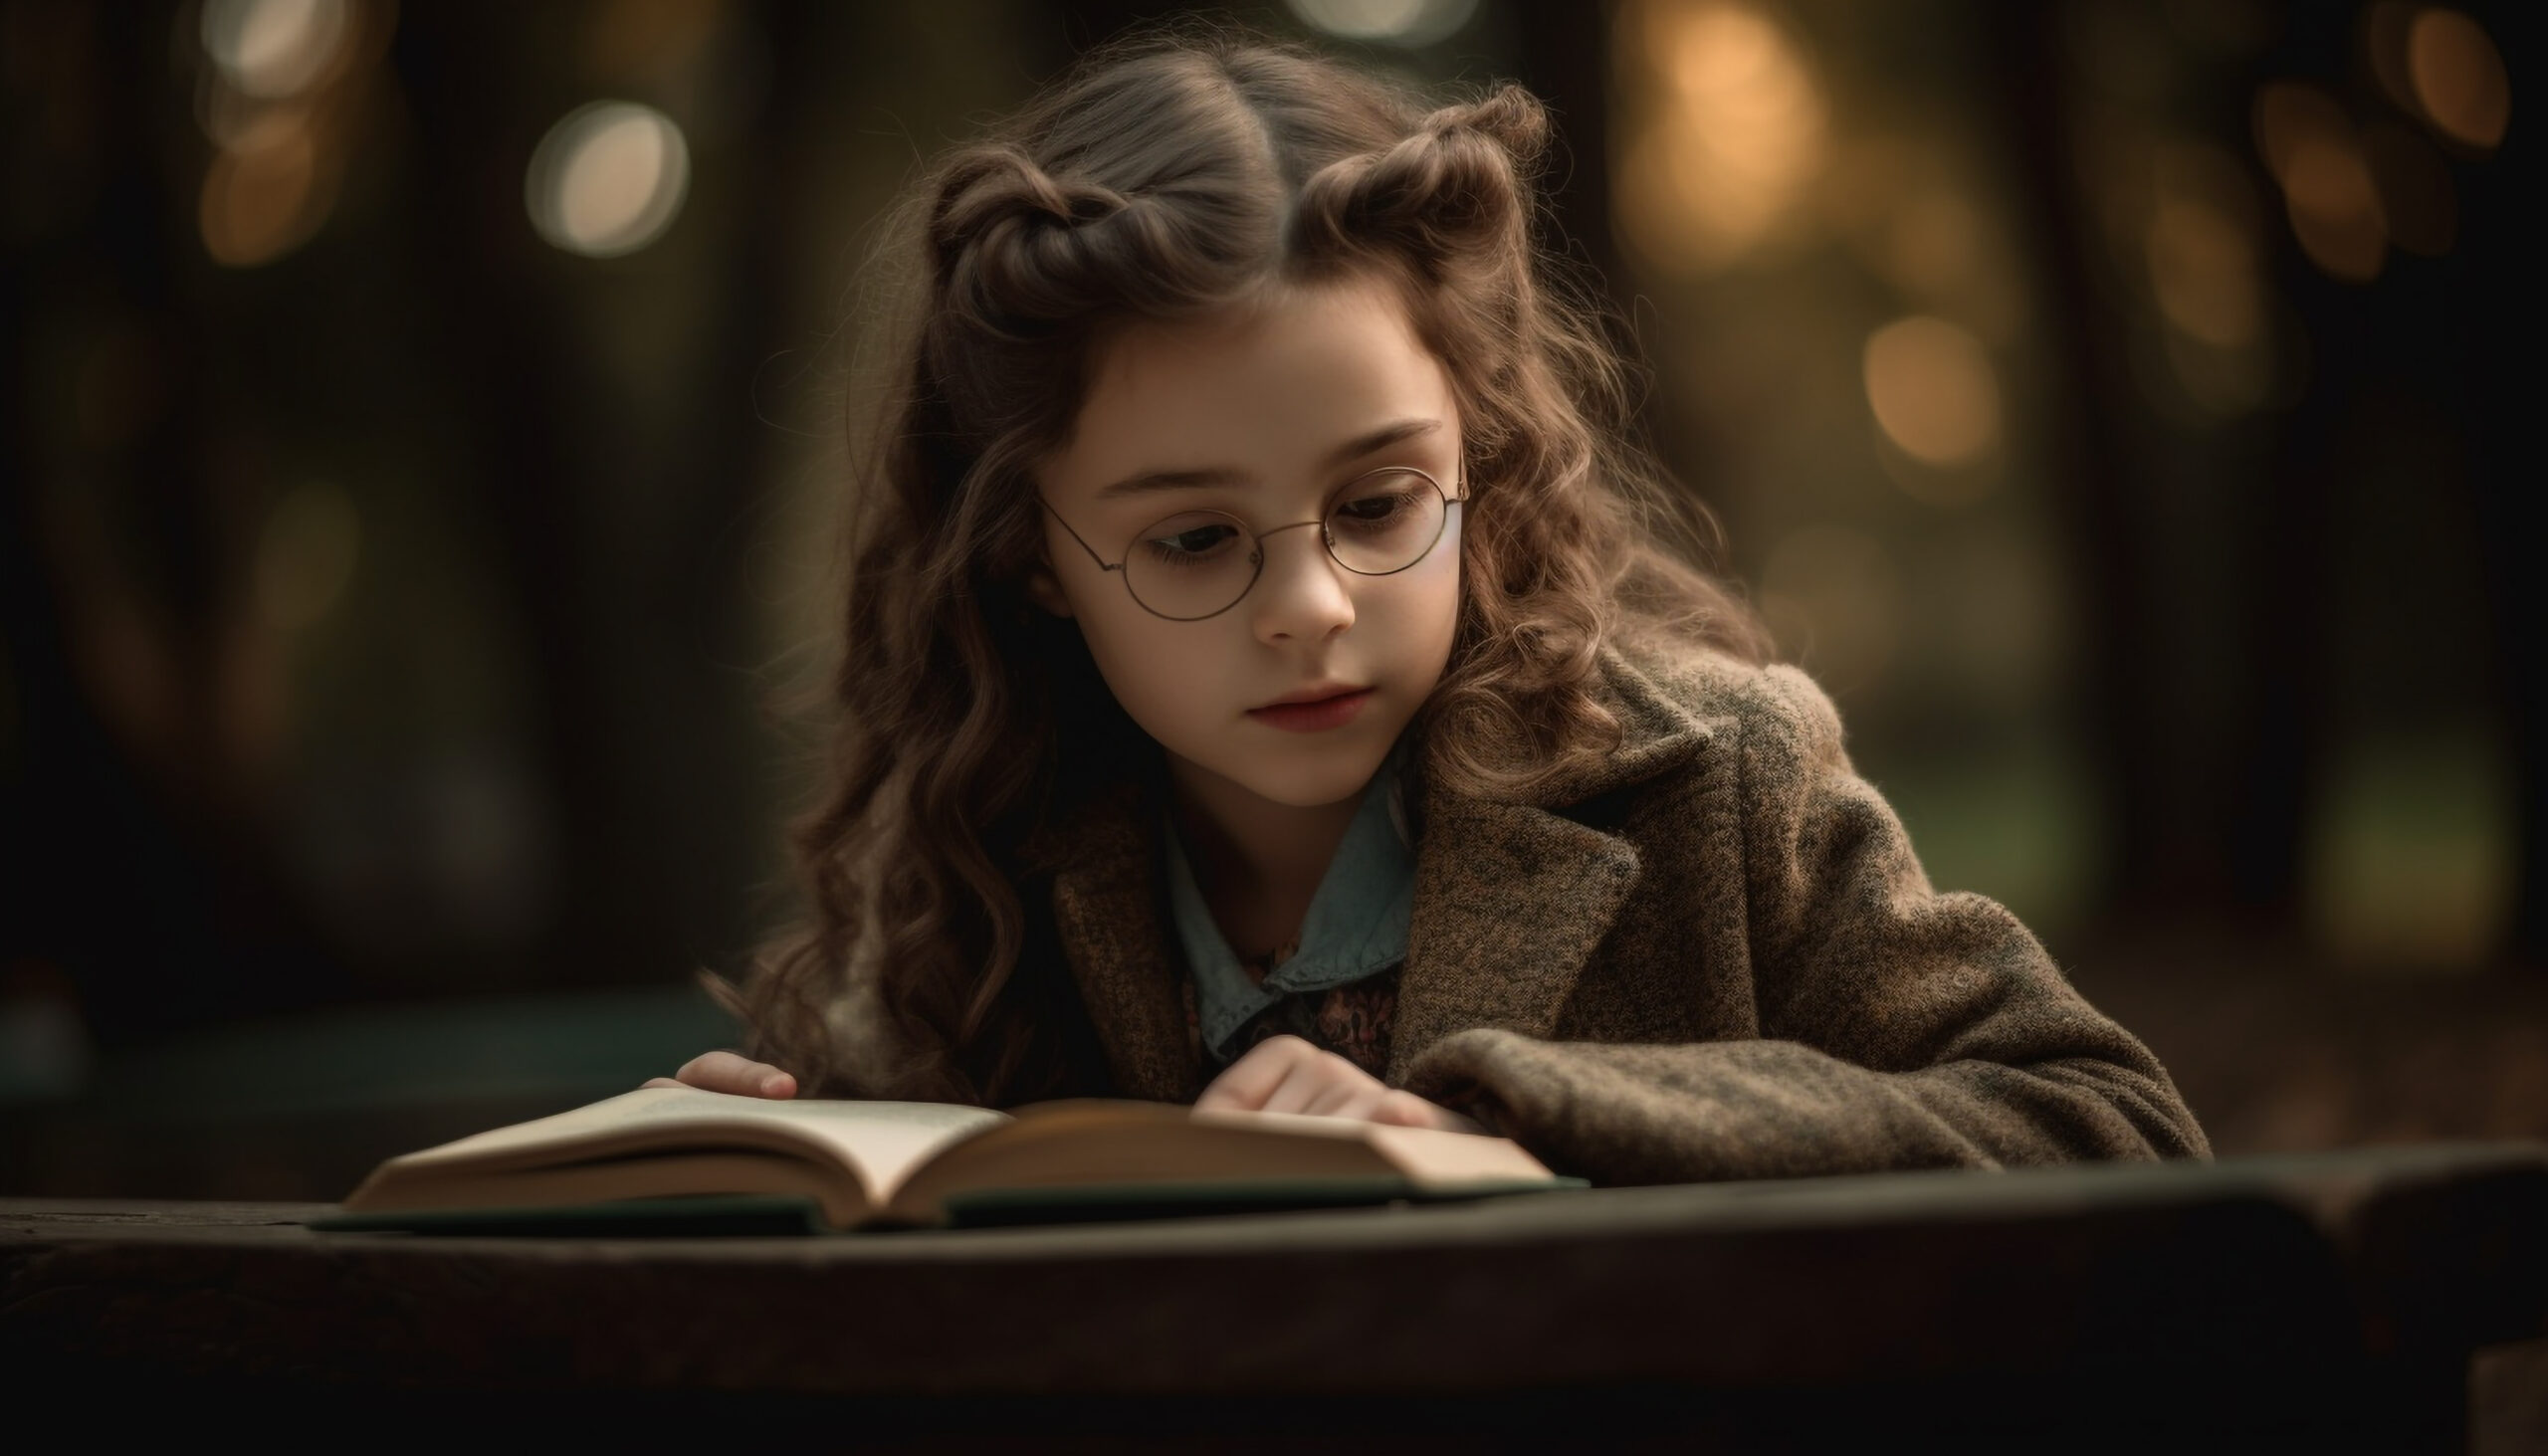 Ten uroczy obrazek przedstawia dziewczynkę siedzącą przy stole i oddającą się lekturze książki. Z widocznym skupieniem i zaciekawieniem przegląda strony, odkrywając światy przedstawione w tekście. Obrazek emanuje ciepłem i spokojem, podkreślając radość czytania oraz rozwijanie wyobraźni i wiedzy już od najmłodszych lat